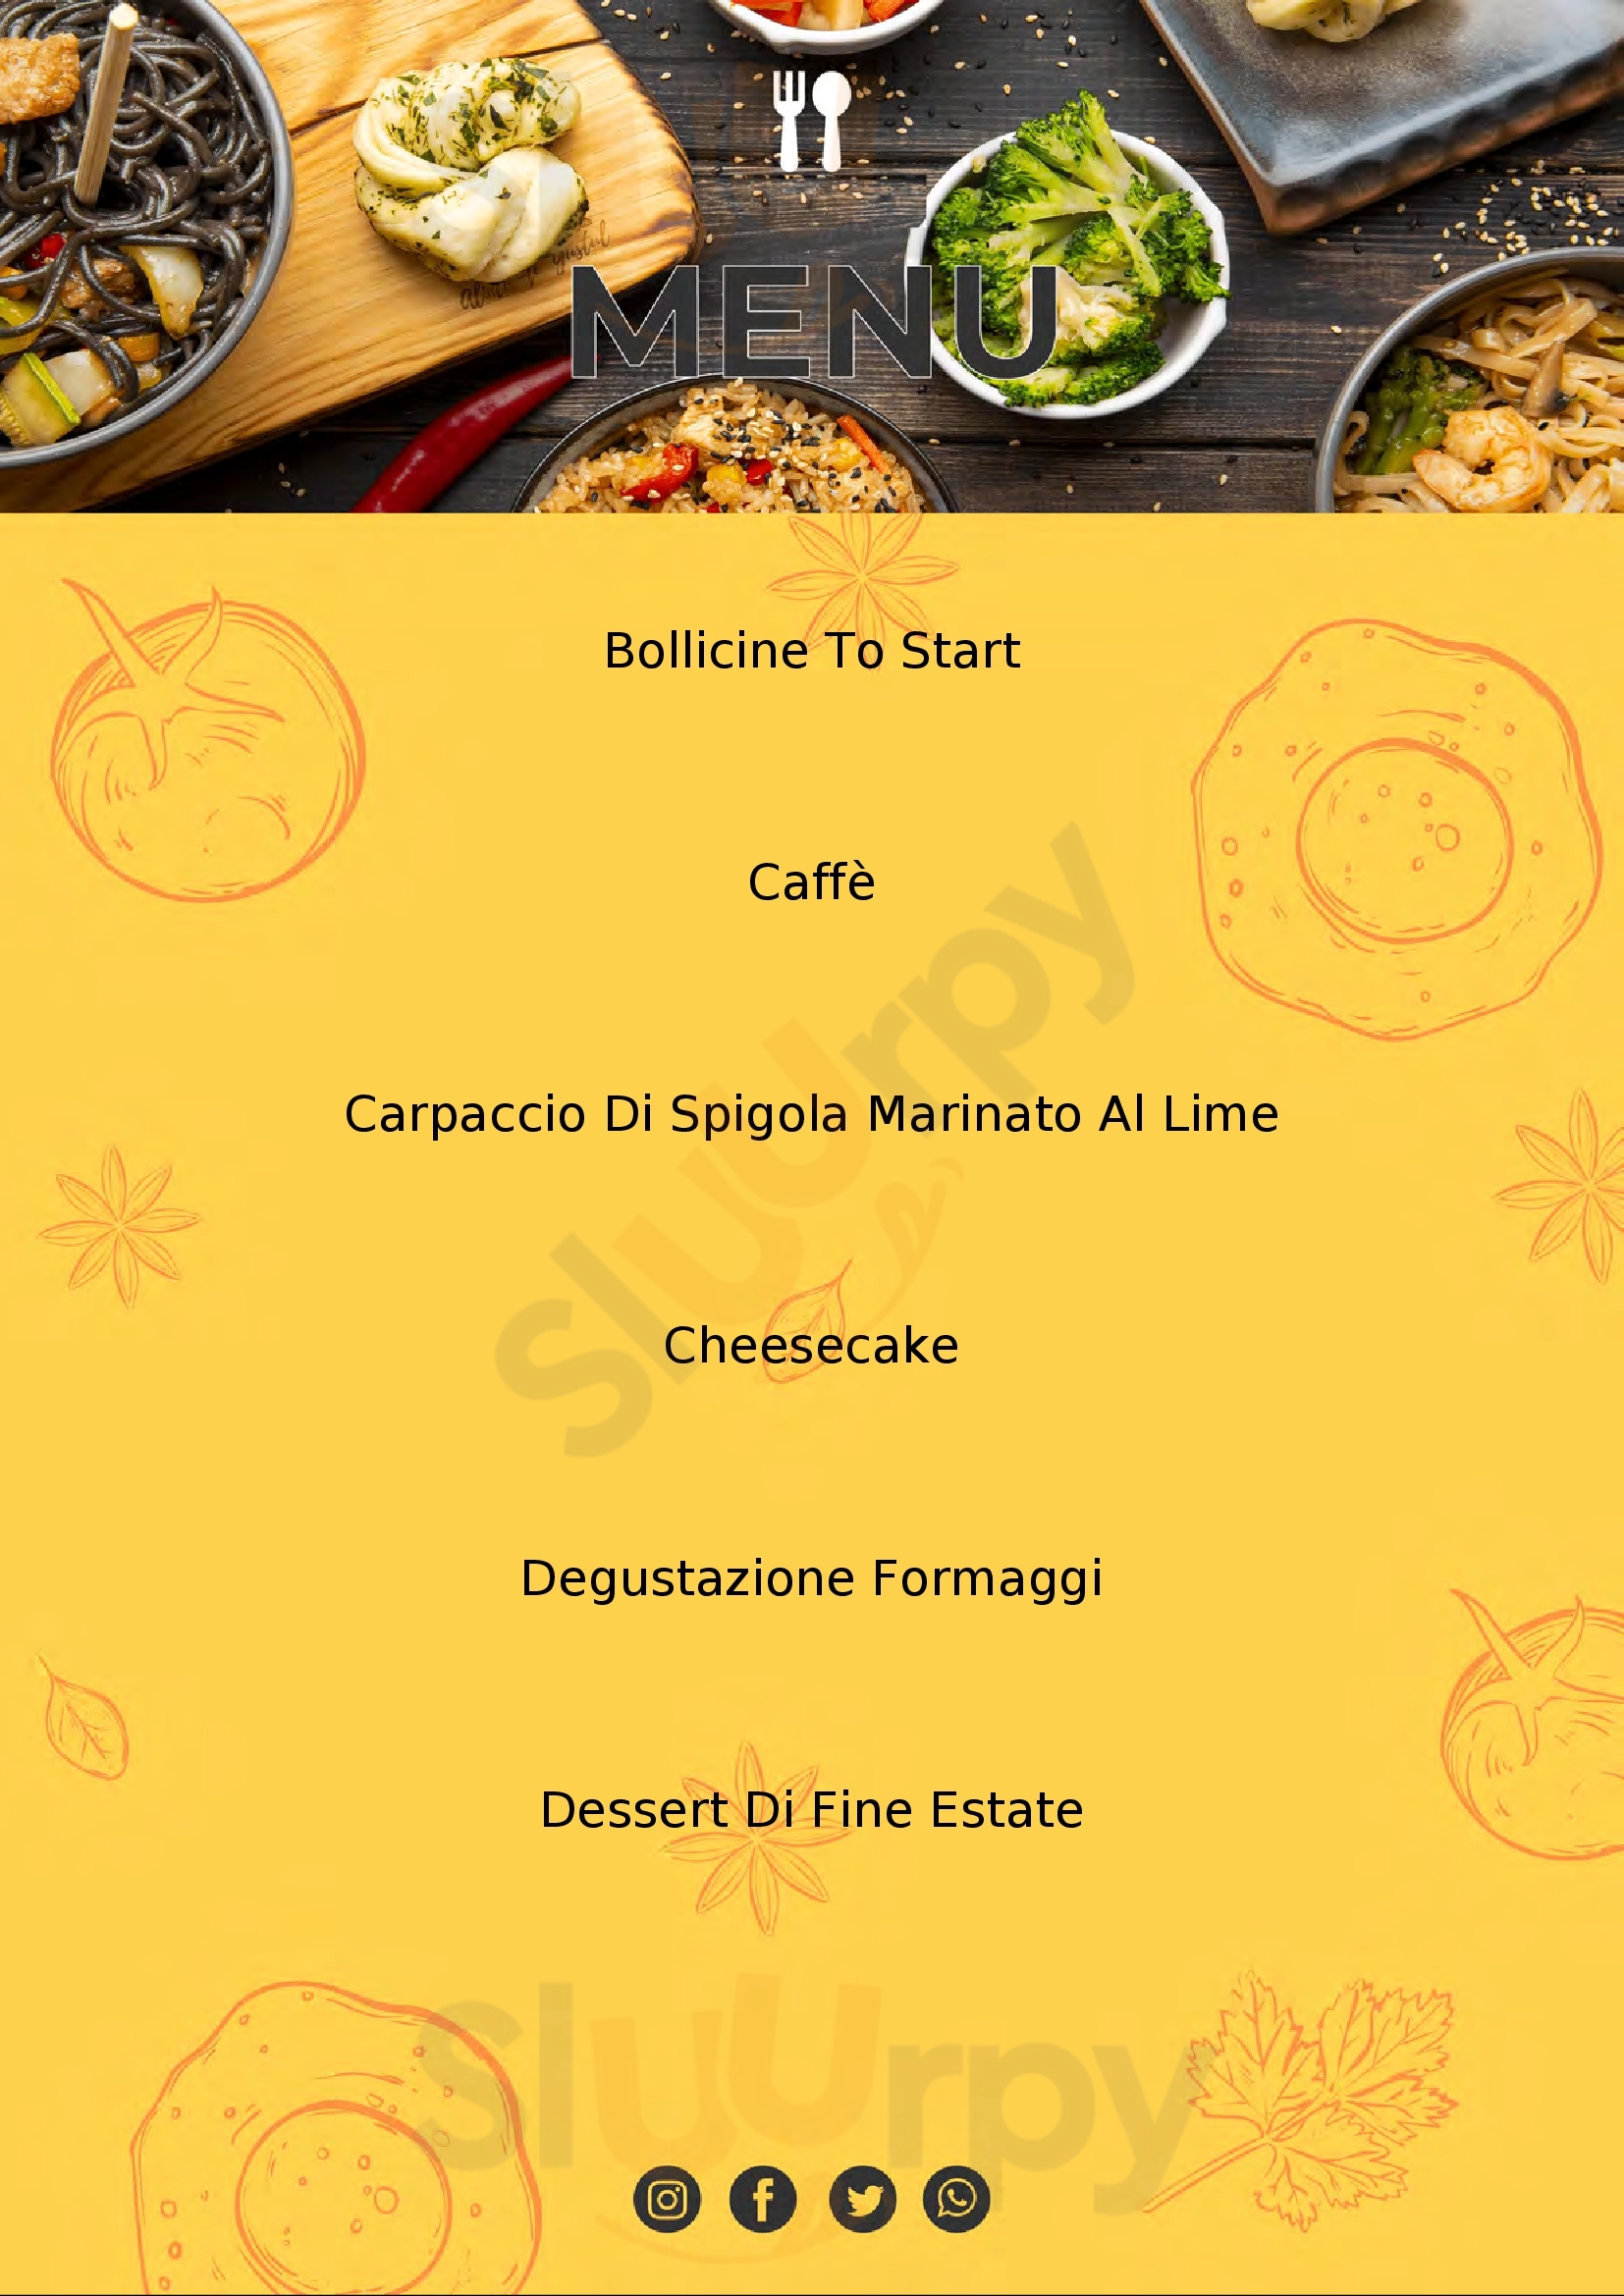 Amare ristorantino Cagliari menù 1 pagina